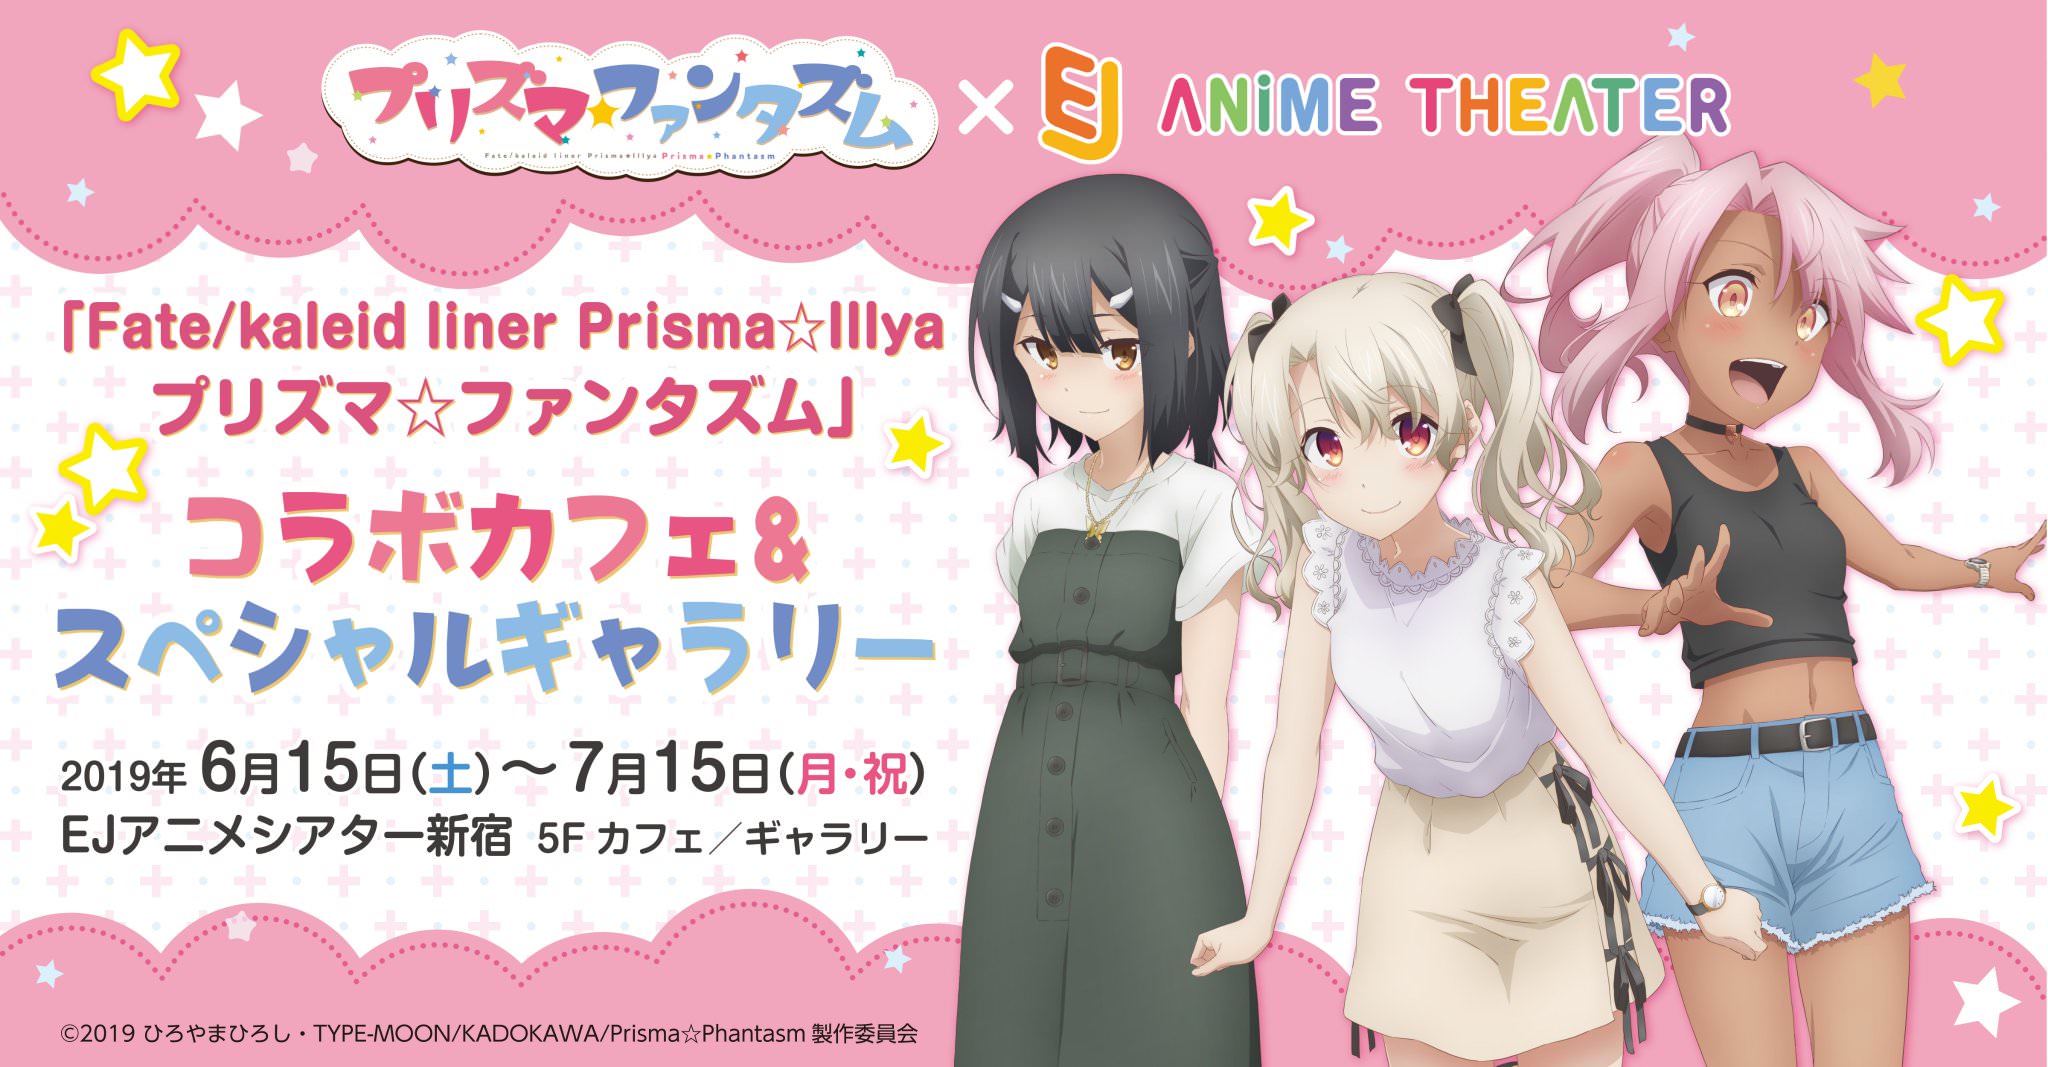 プリズマ☆ファンタズムカフェ in EJアニメシアター 6.15-7.15 コラボ開催!